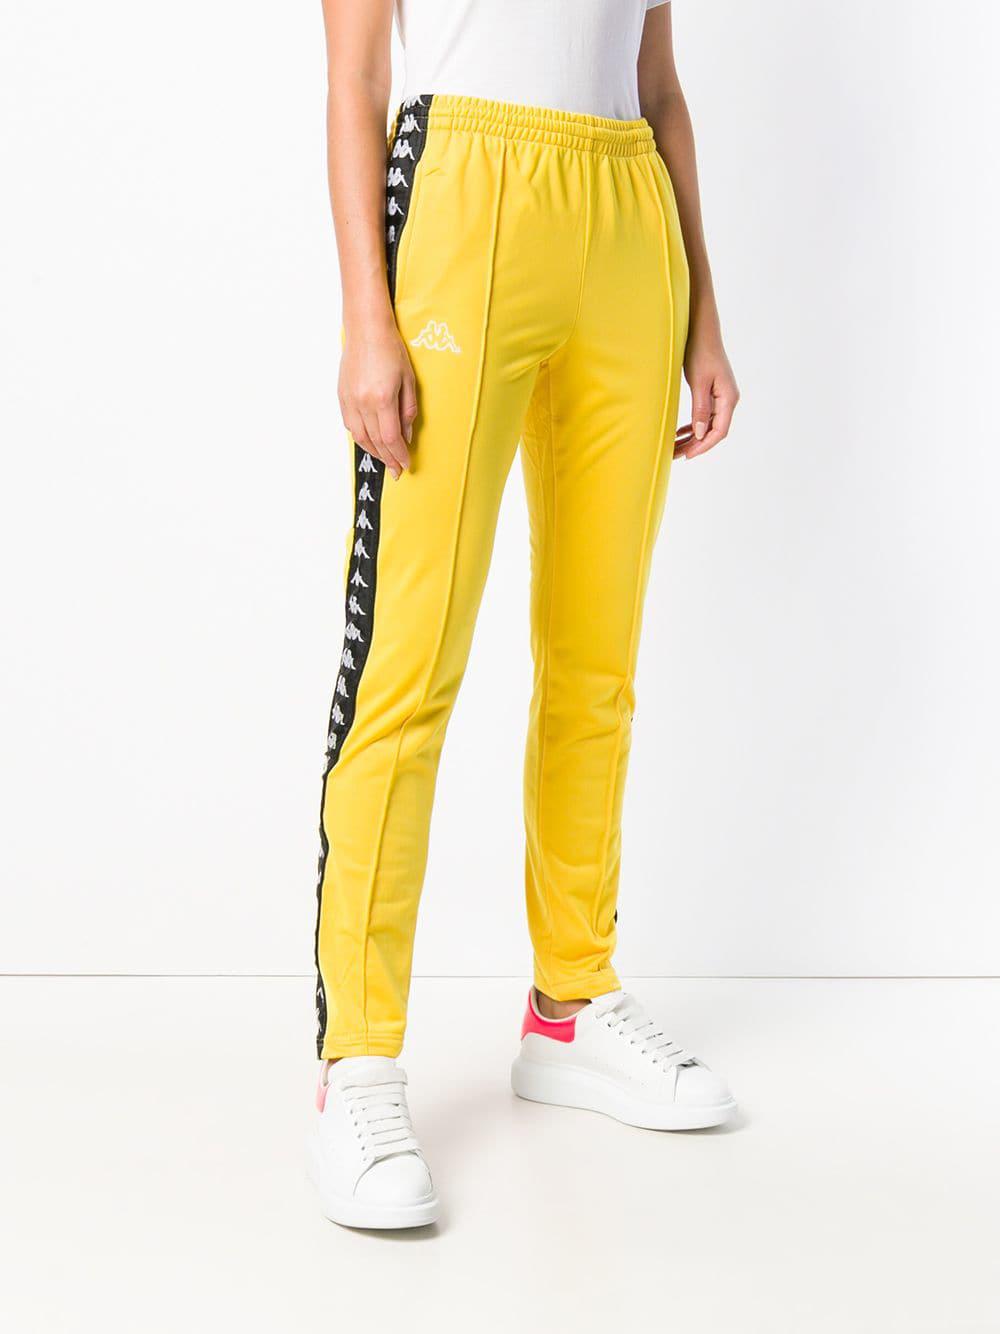 Kappa Track Pants Yellow Factory Sale, 55% OFF | ilikepinga.com